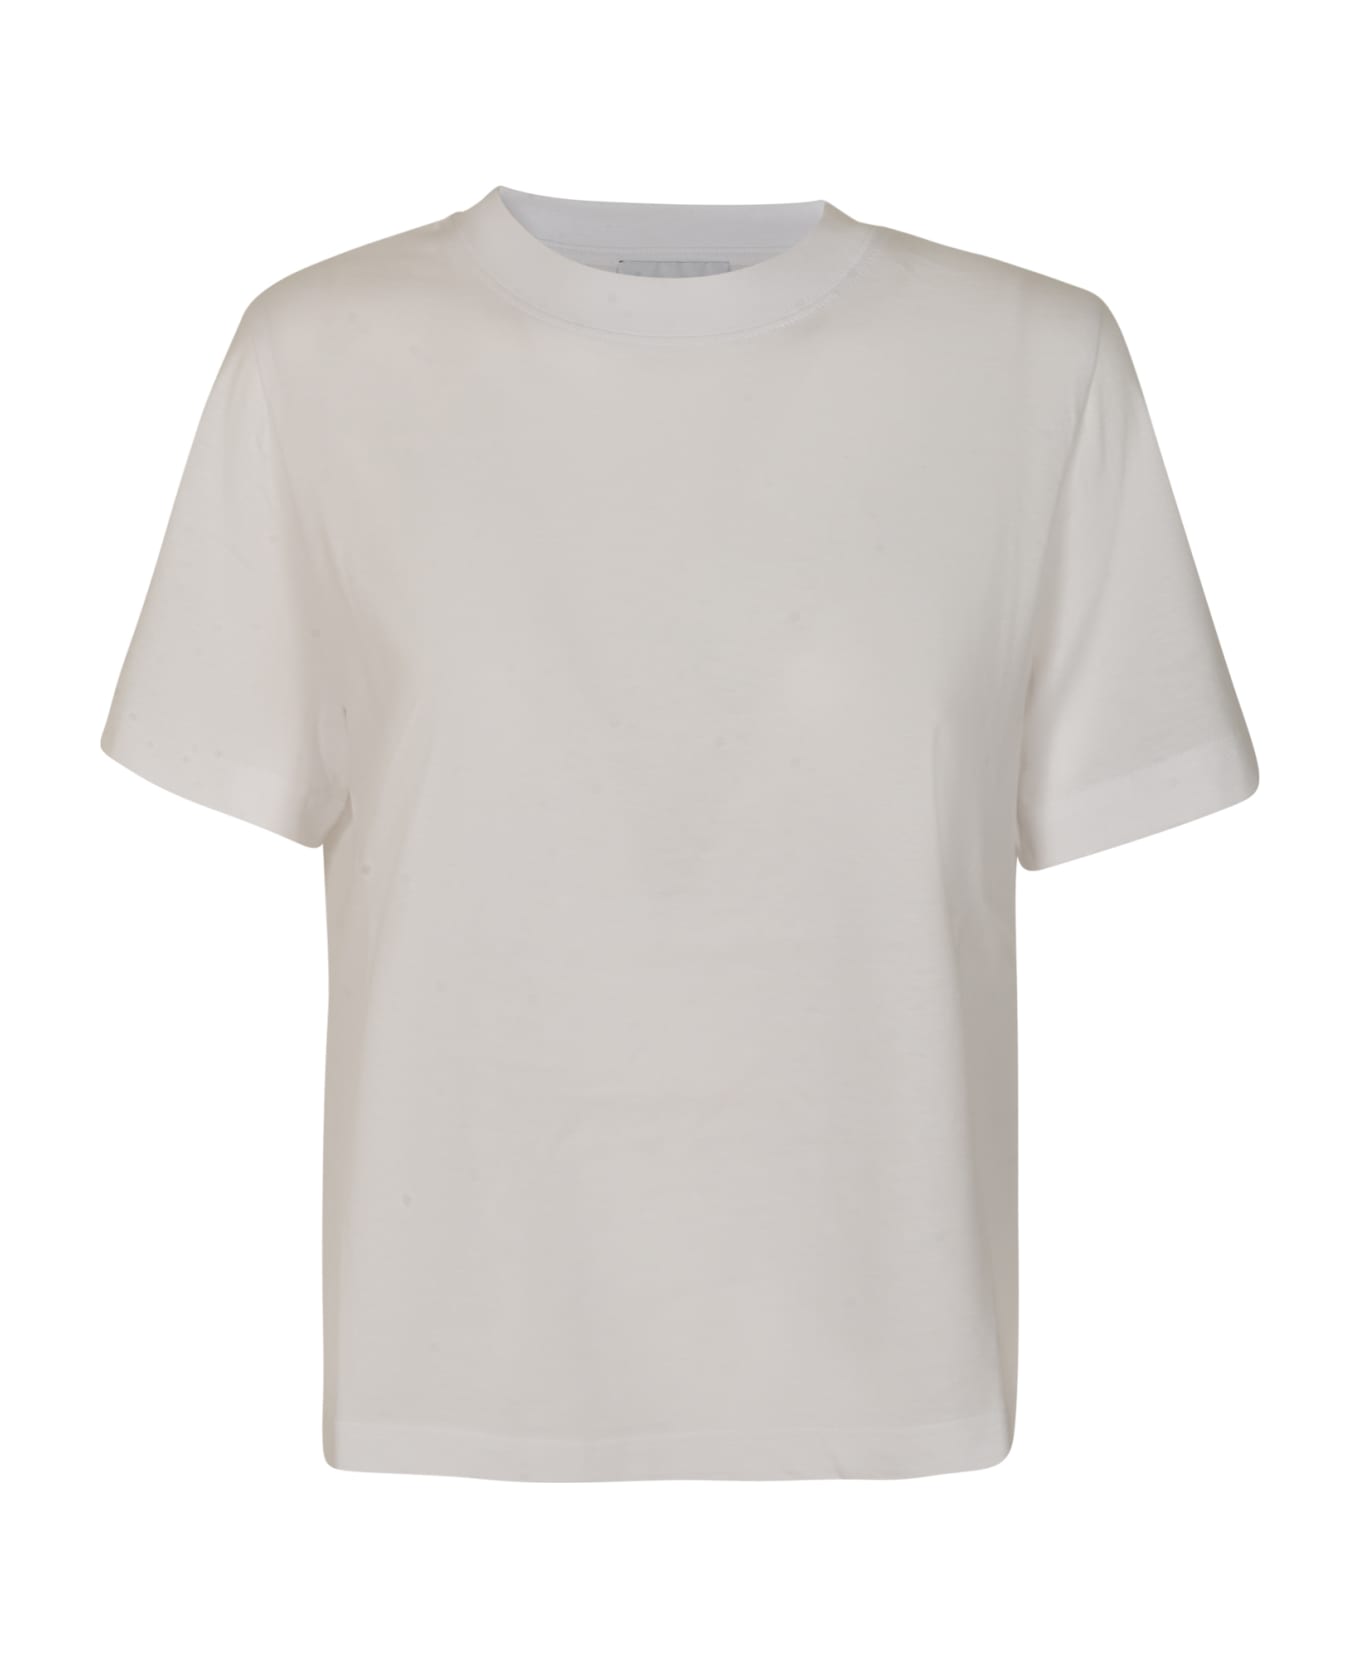 VIS A VIS Round Neck T-shirt - White